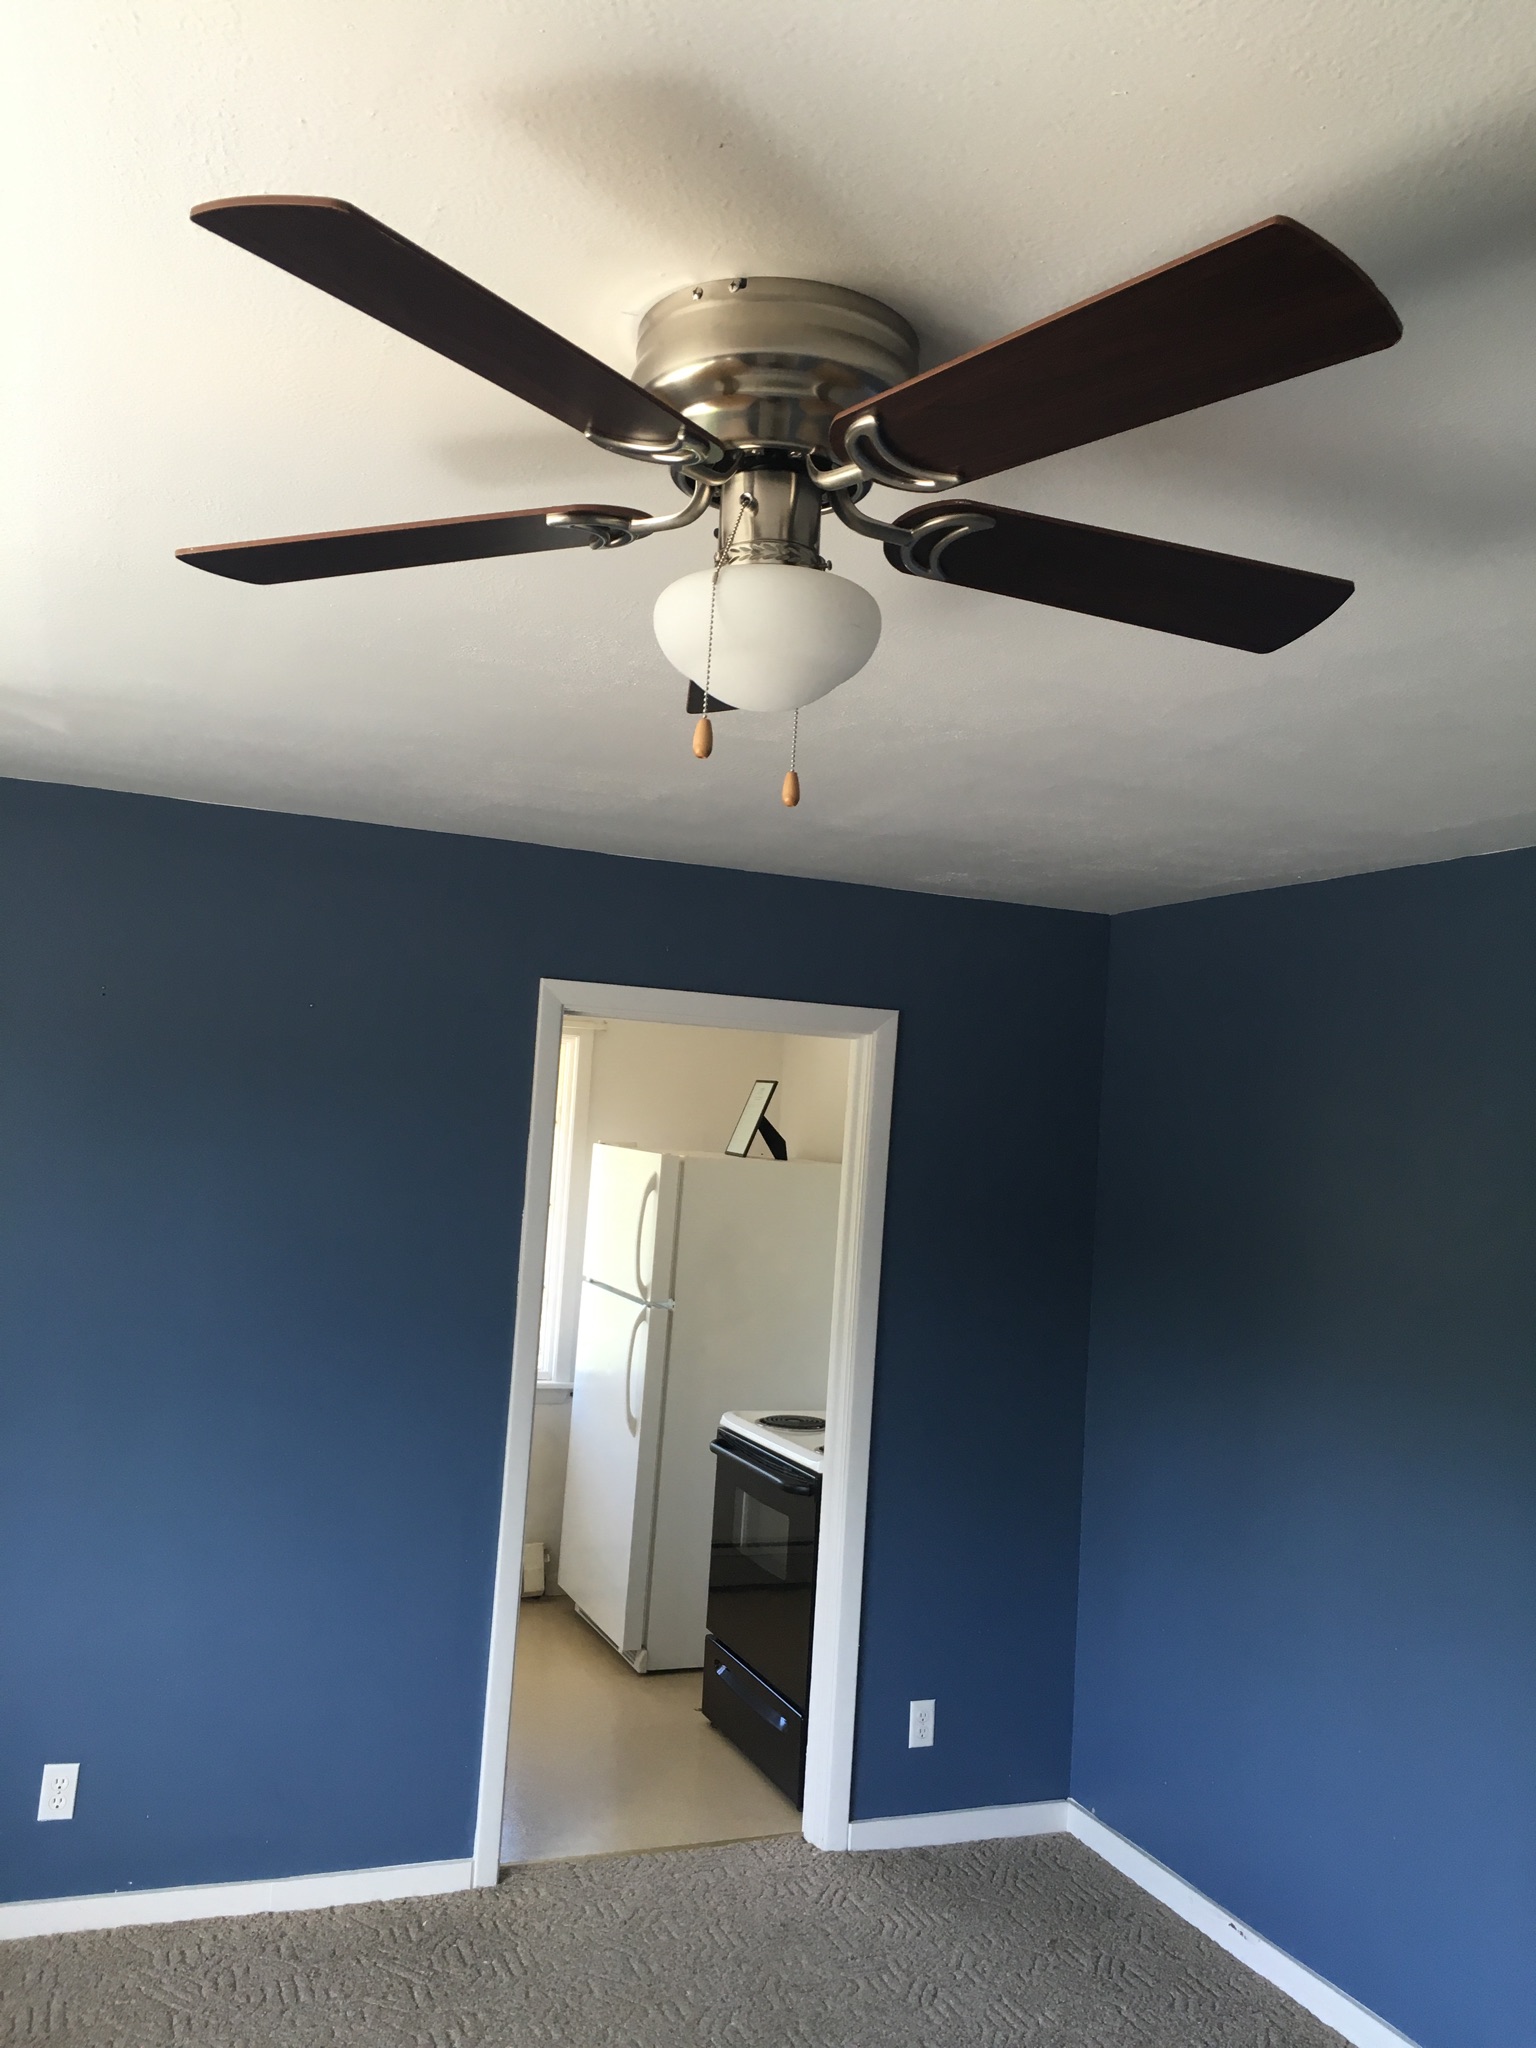 SerD-E Ceiling Fan and Kitchen.jpg